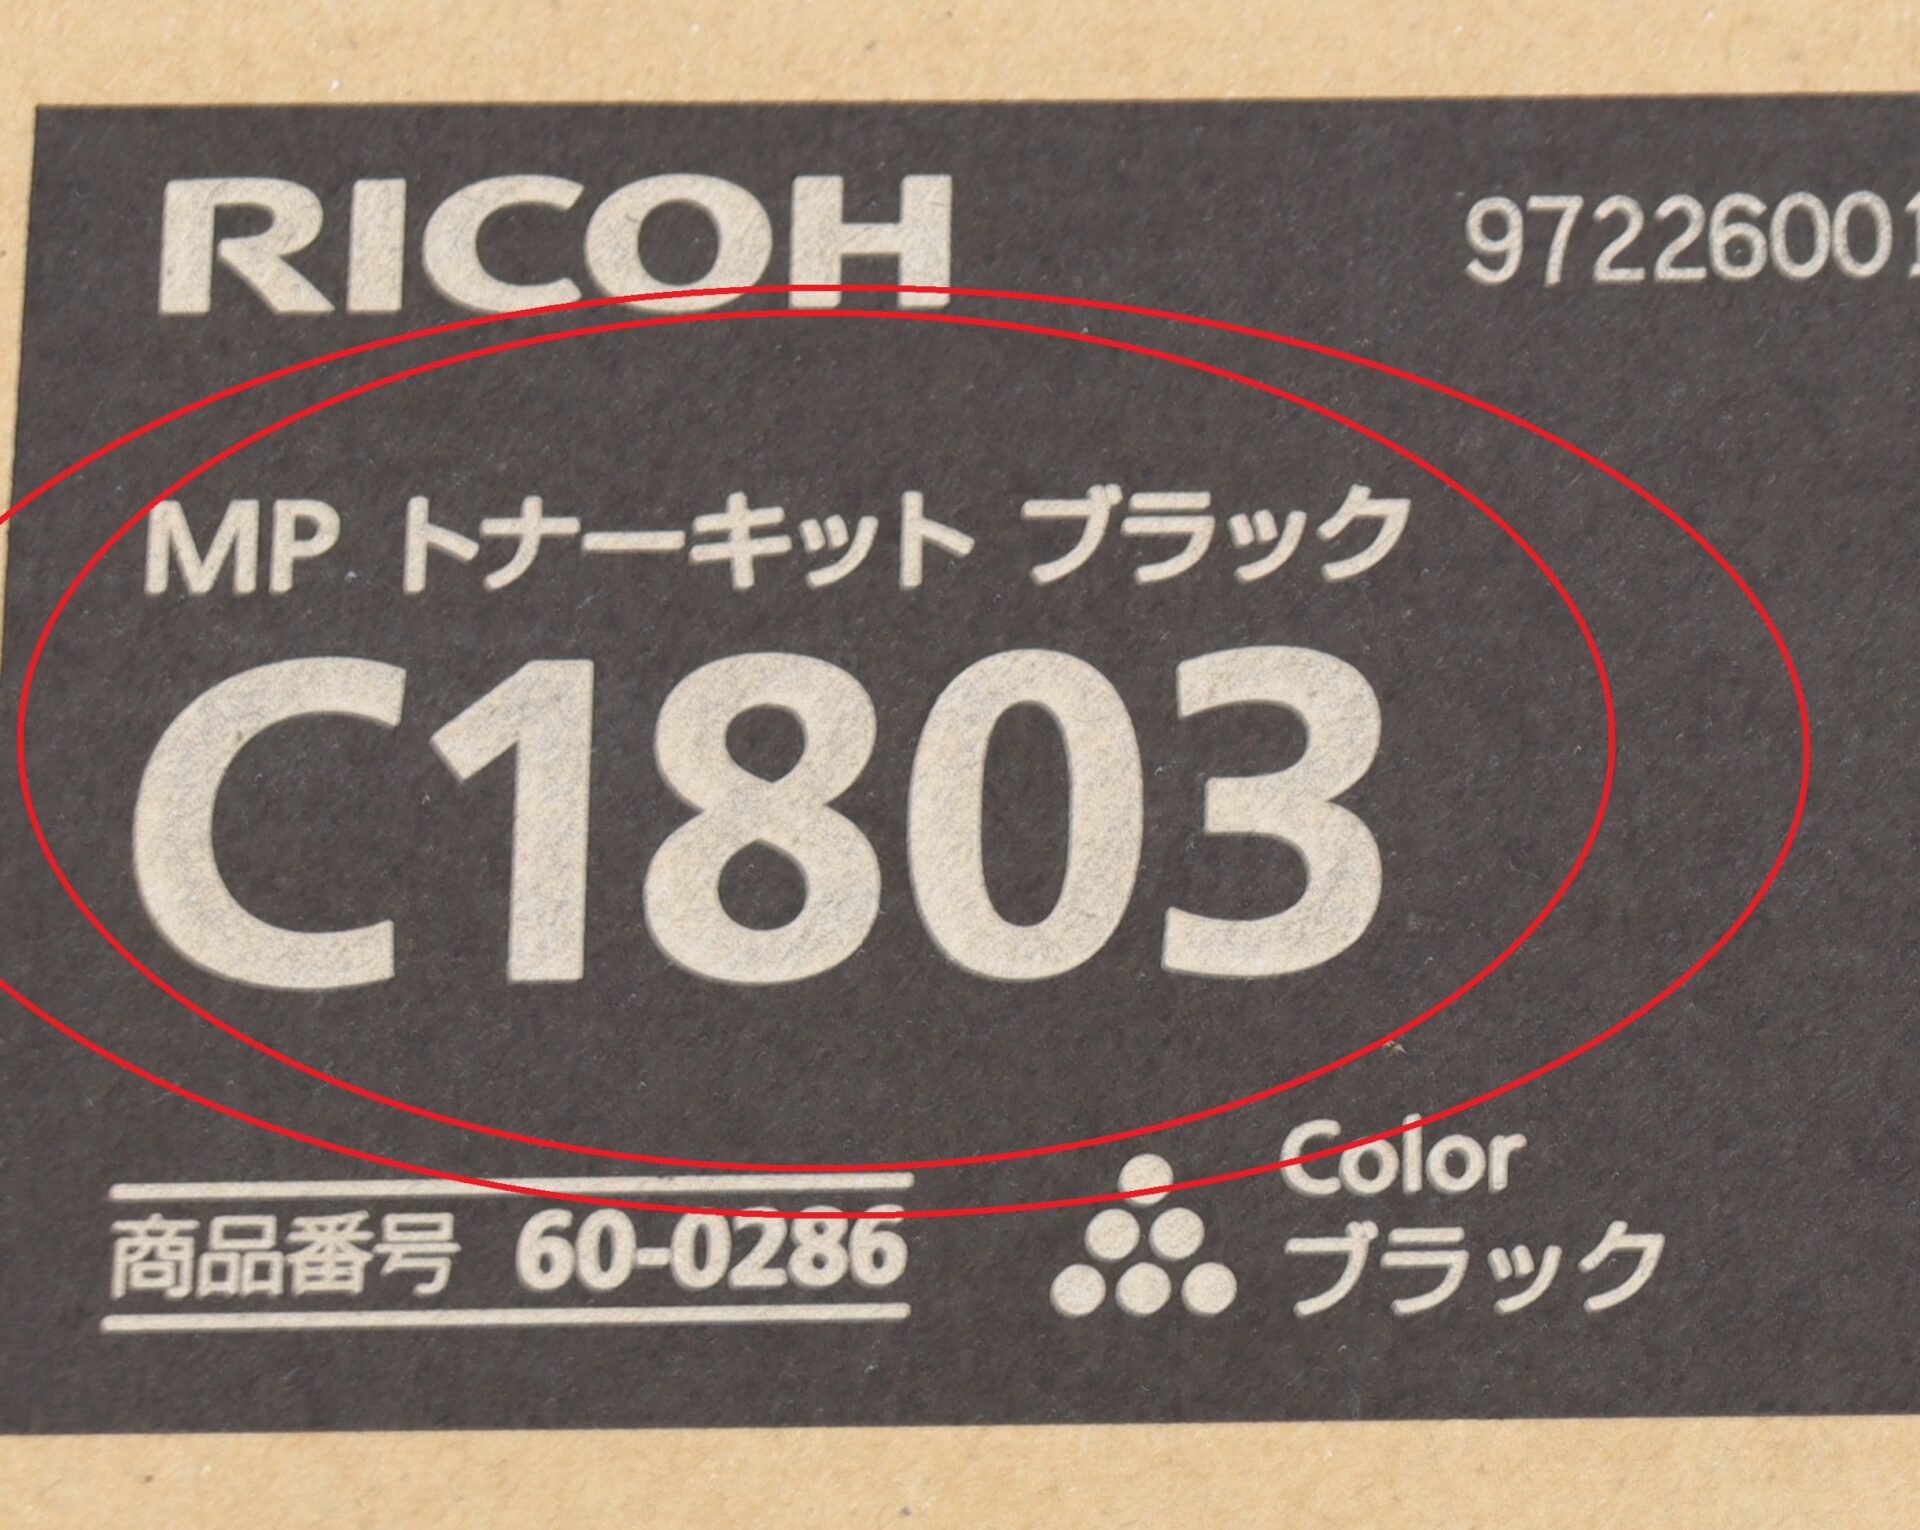 RICOH MPトナーキット C1803 ブラック